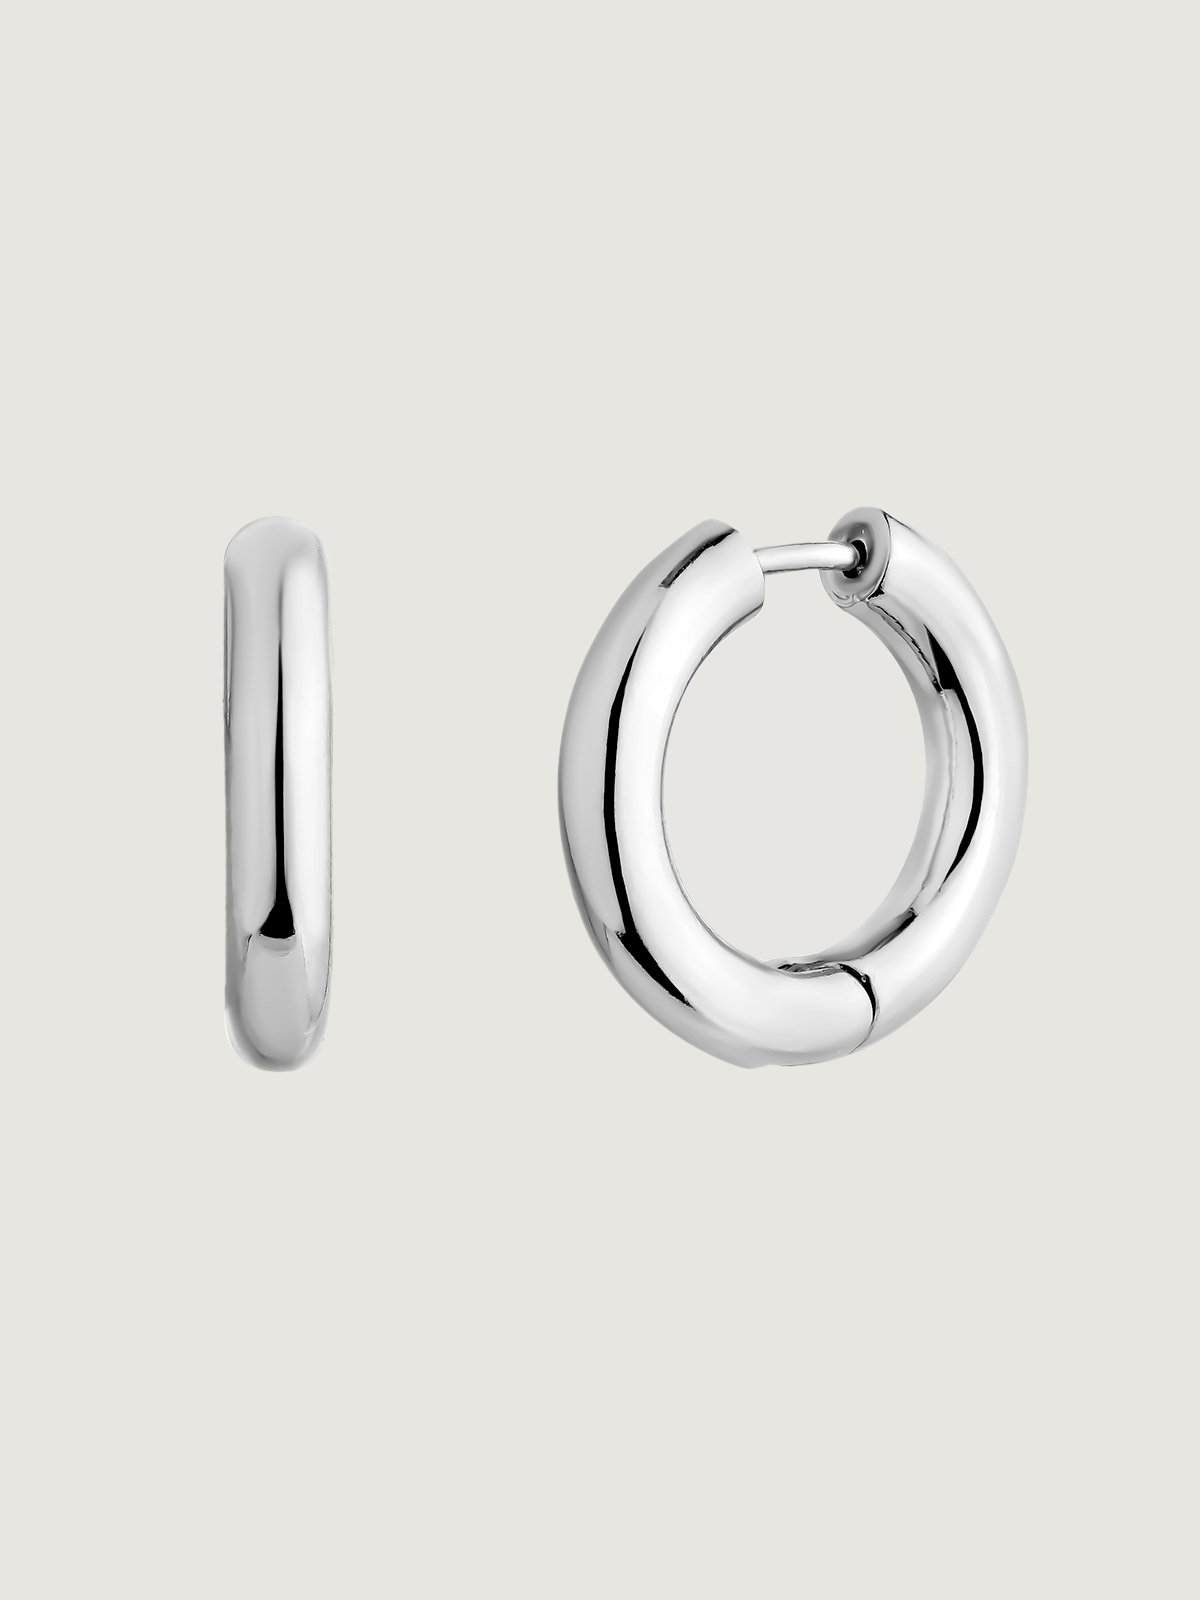 Medium-sized 925 silver hoop earrings